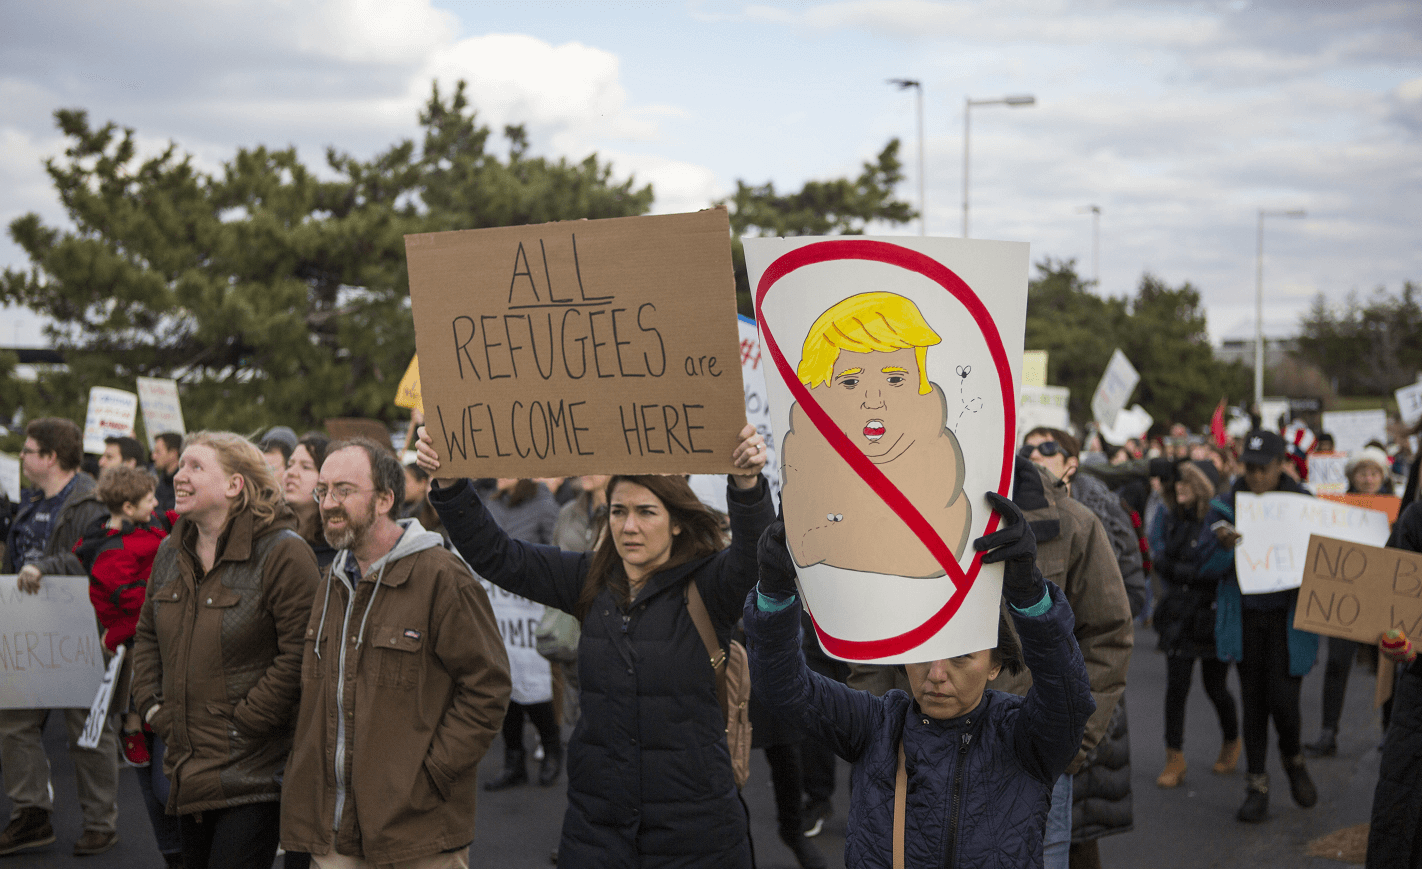 Manifestantes protestan en el aeropuerto de Philadelphia en contra de las medidas migratorias de Trump contra refugiados y musulmanes. (Getty Images, archivo)